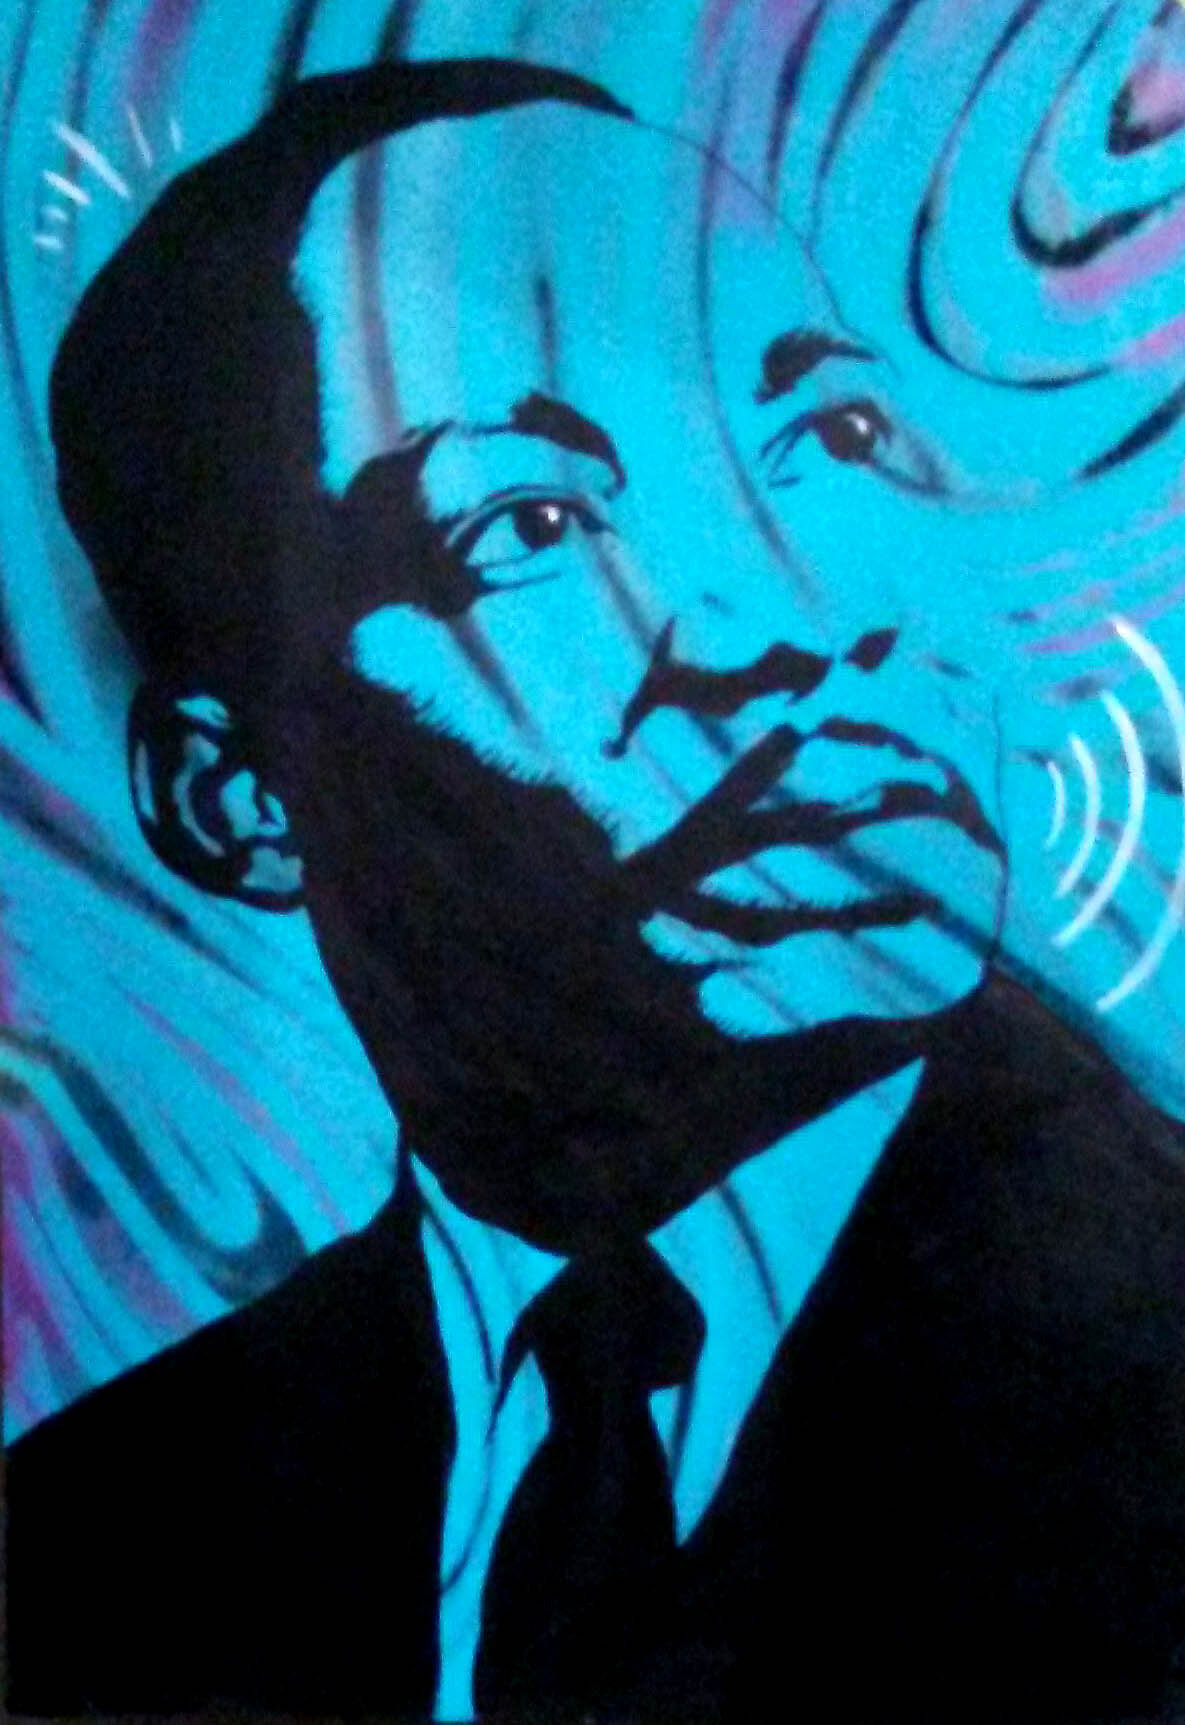  Martin Luther King Jr. artwork for Westside Park’s Black History Month. 